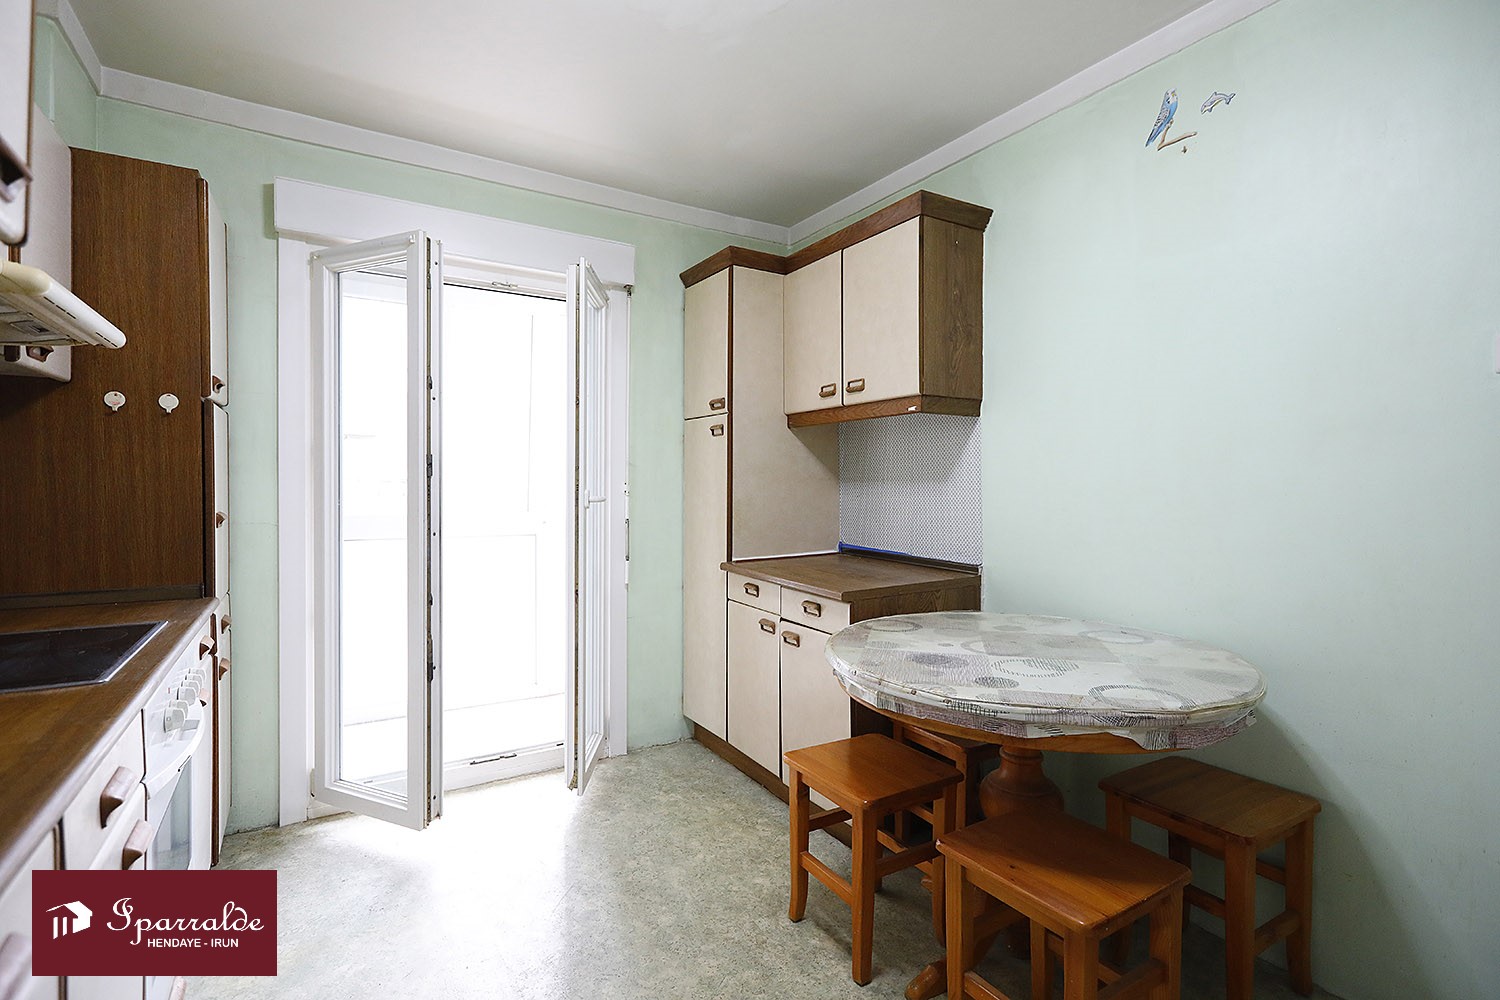 Vivienda de tres habitaciones a reformar en zona próxima a Anzarán. Ascensor